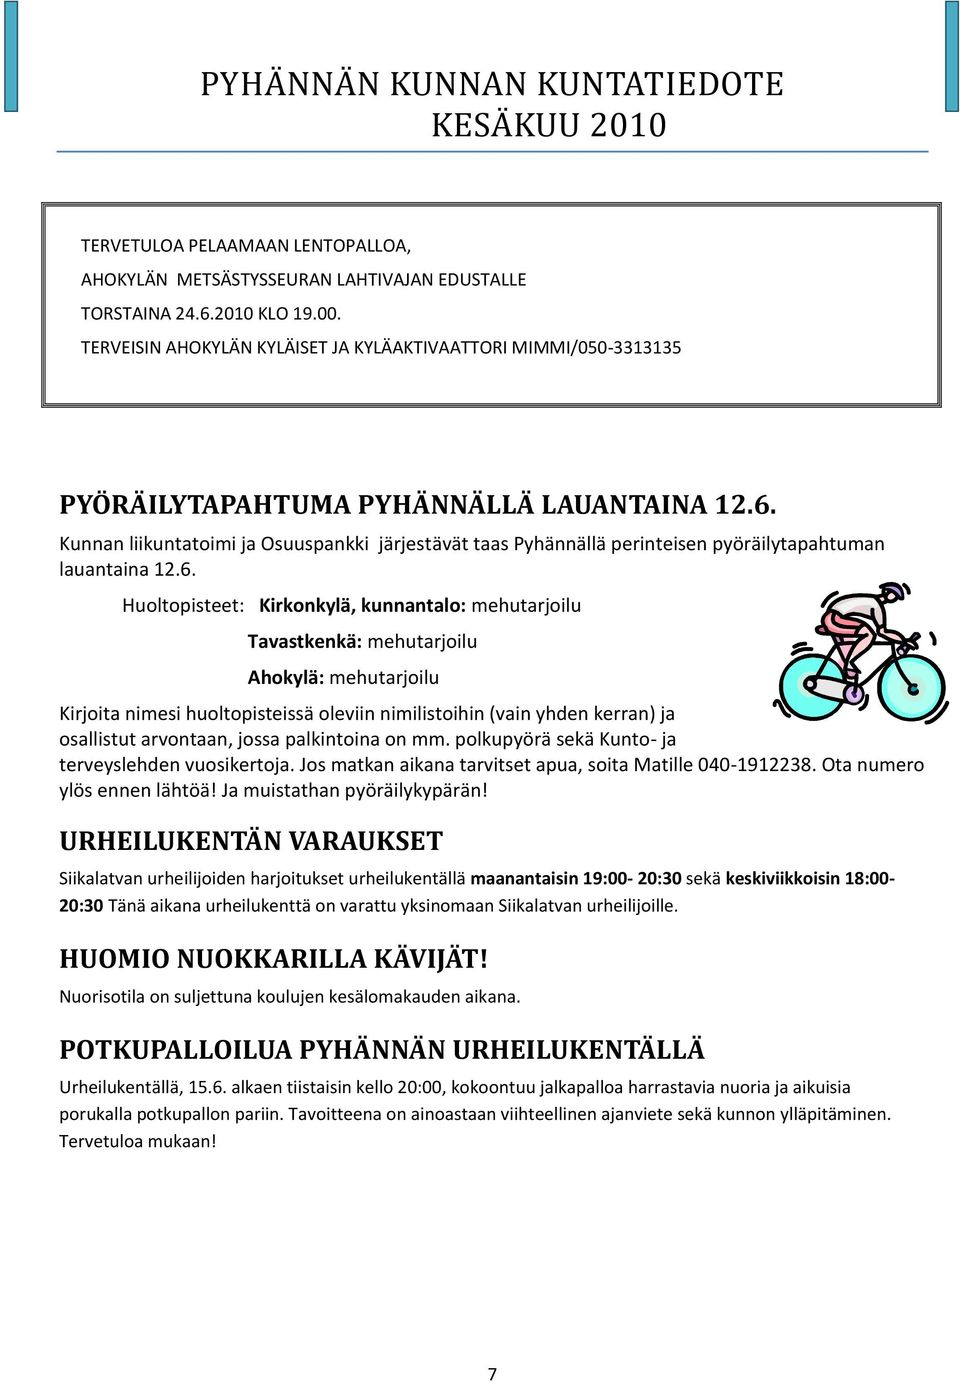 Kunnan liikuntatoimi ja Osuuspankki järjestävät taas Pyhännällä perinteisen pyöräilytapahtuman lauantaina 12.6.